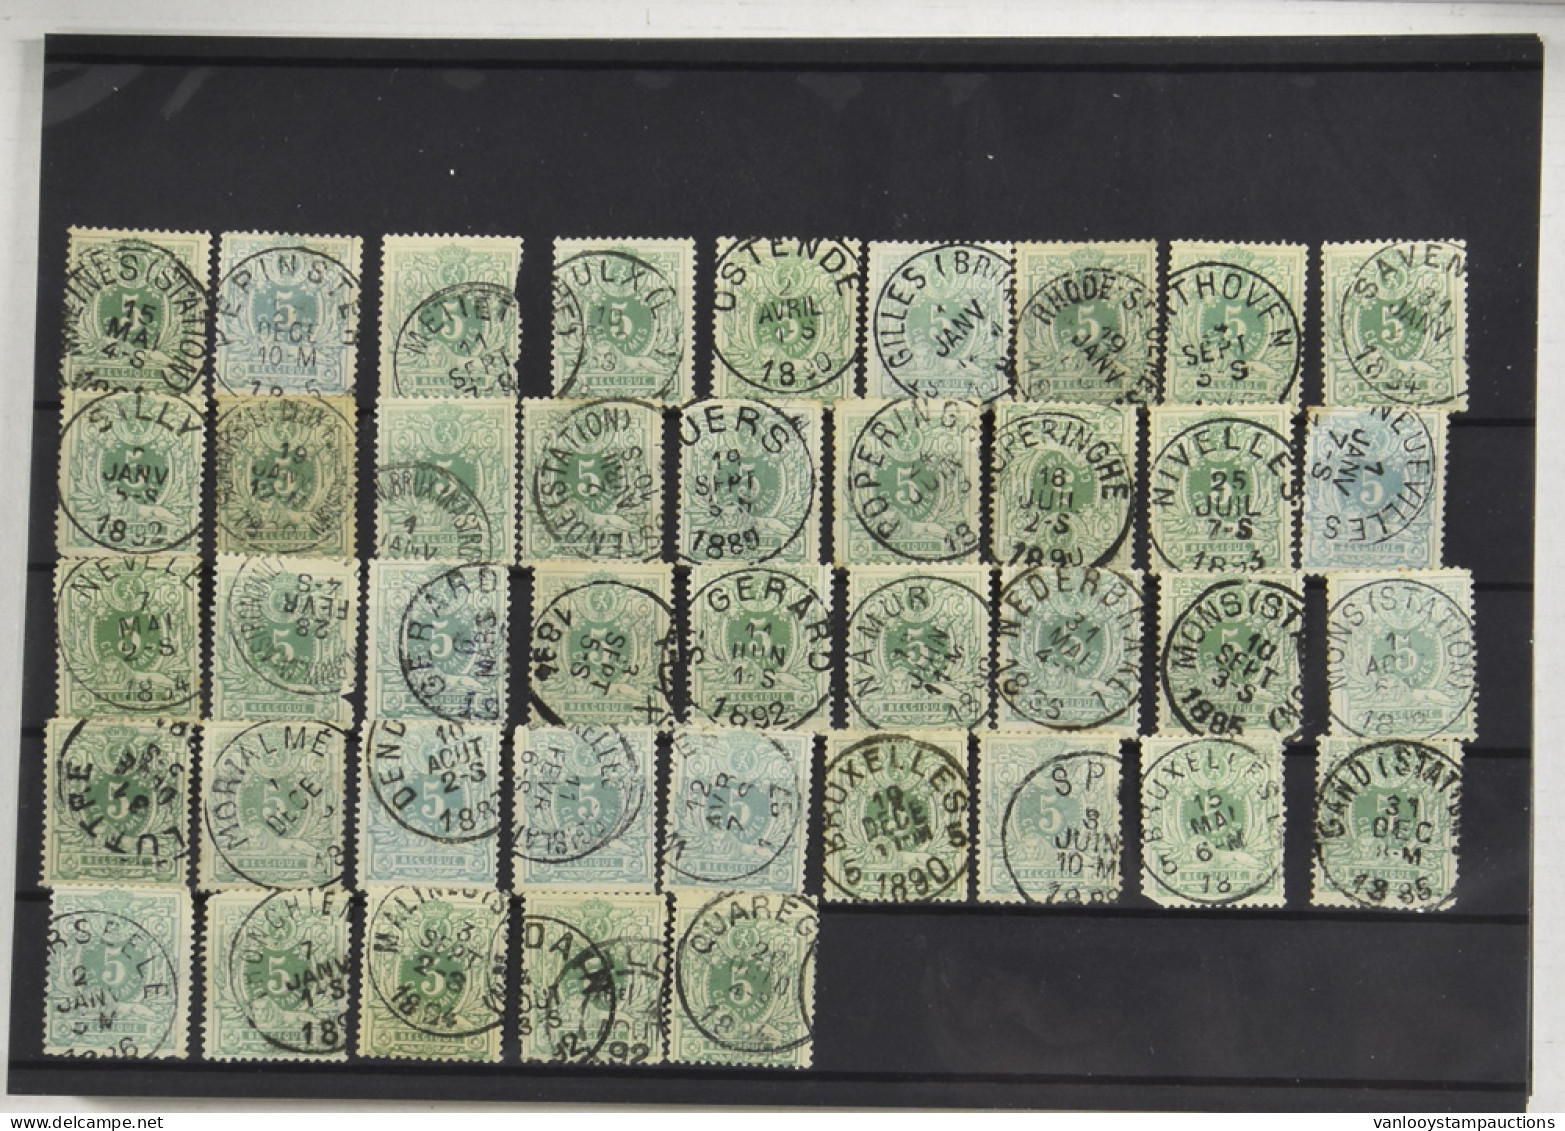 N° 45 5c. Groen, 212 Exemplaren, 6 Exemplaren Uitgesneden ZK, Meestal Centrale Stempels, Voor De Stempelzoeker, Zm/m/ntz - 1869-1888 Liggende Leeuw